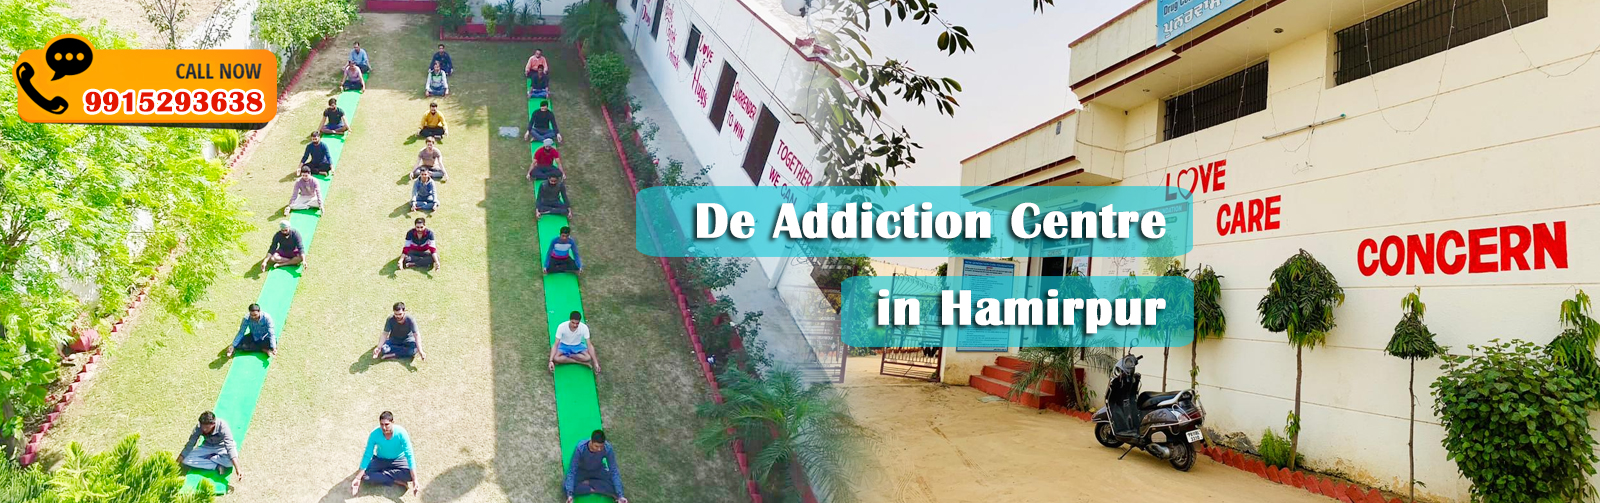 De Addiction Centre in Hamirpur